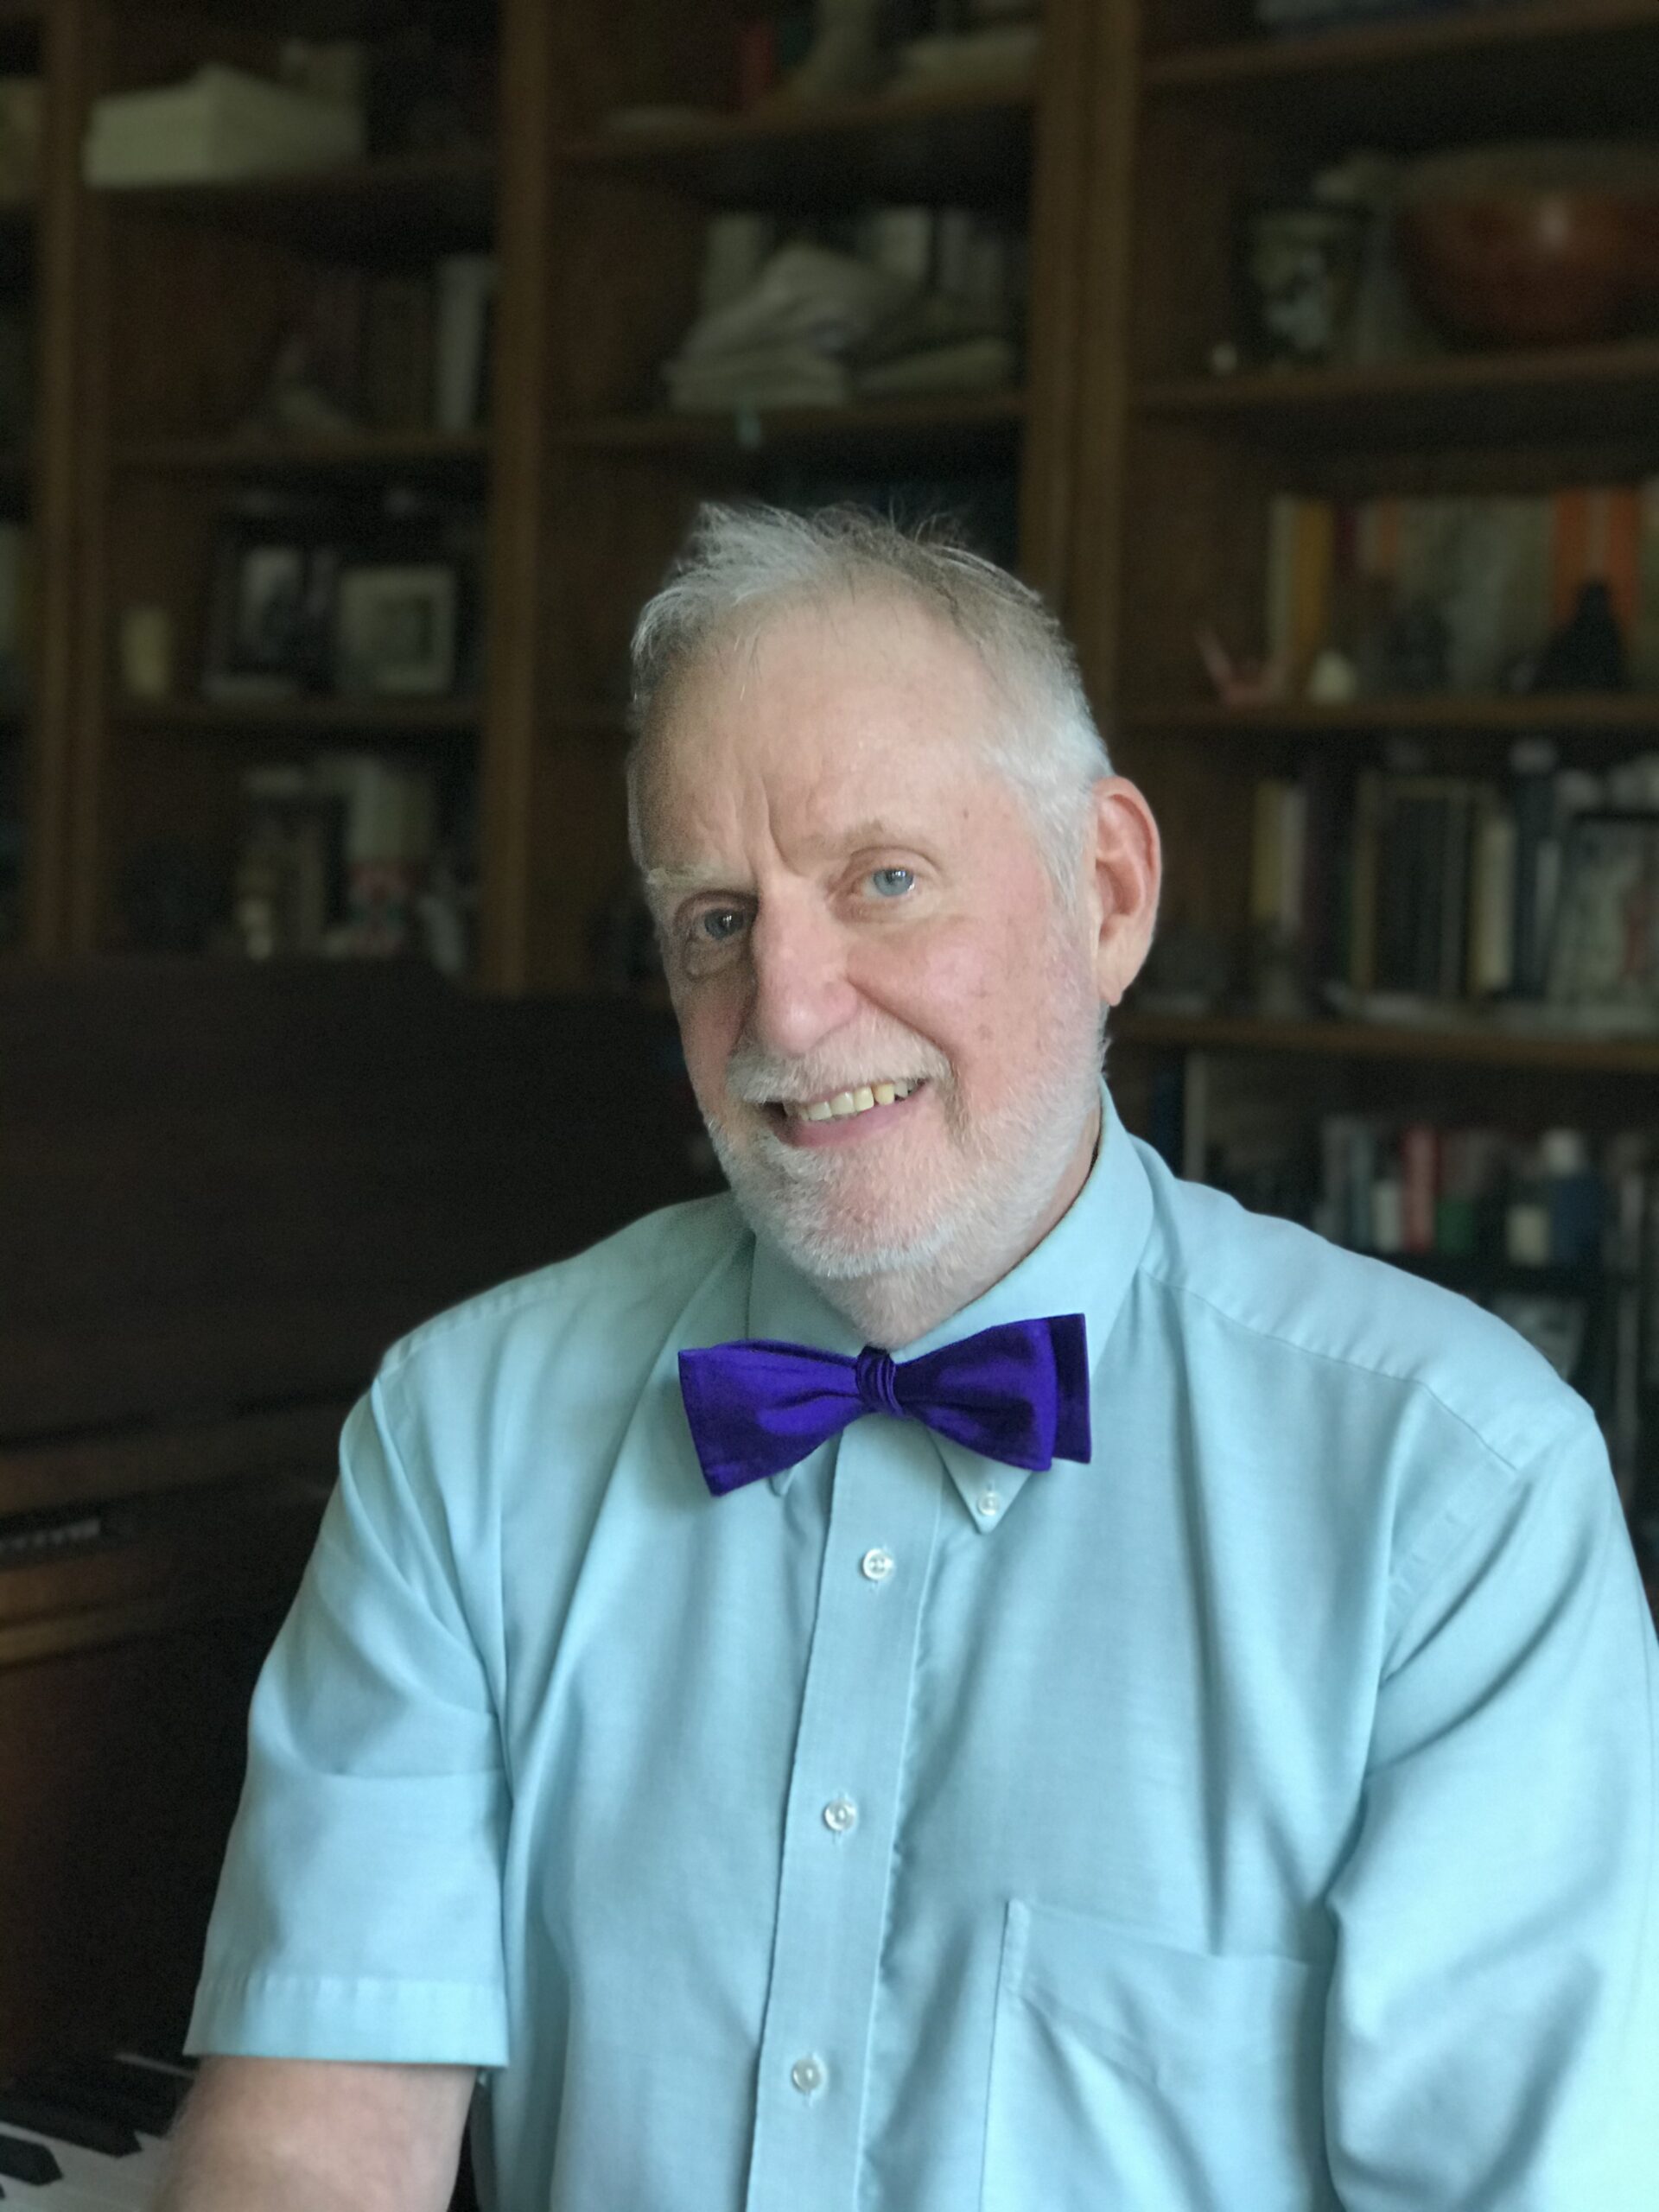 Headshot photo of Donald Schneider wearing a bowtie